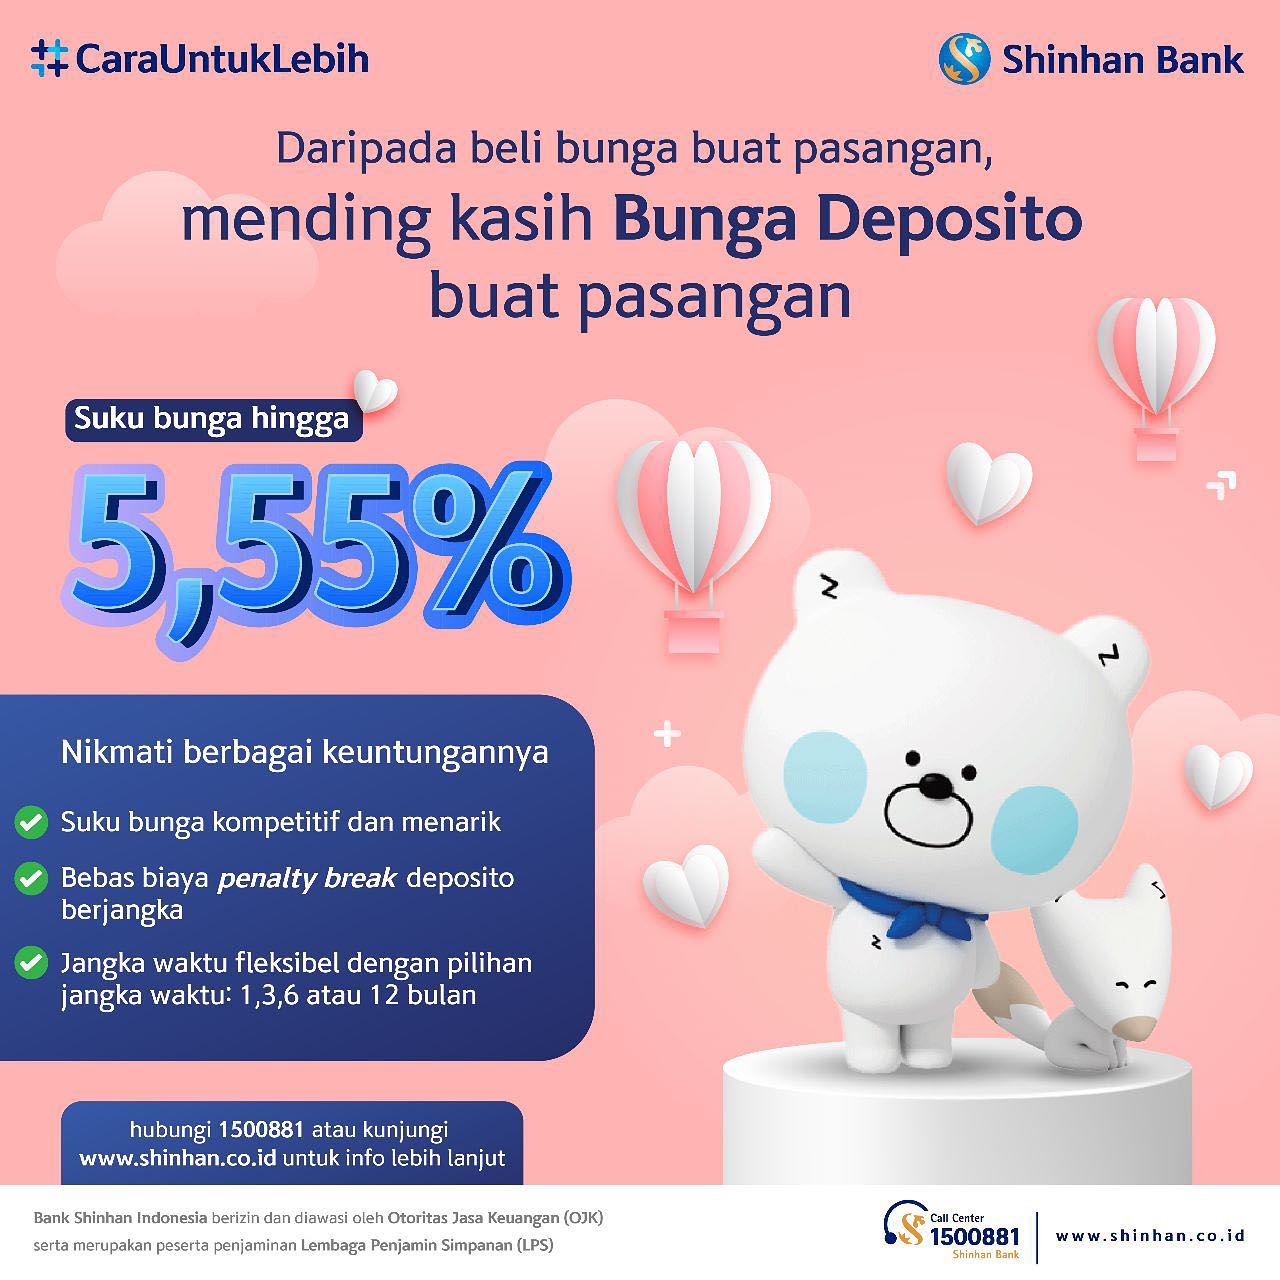 Bank ShinBank Indonesia: Perbankan dengan Layanan Inovatif